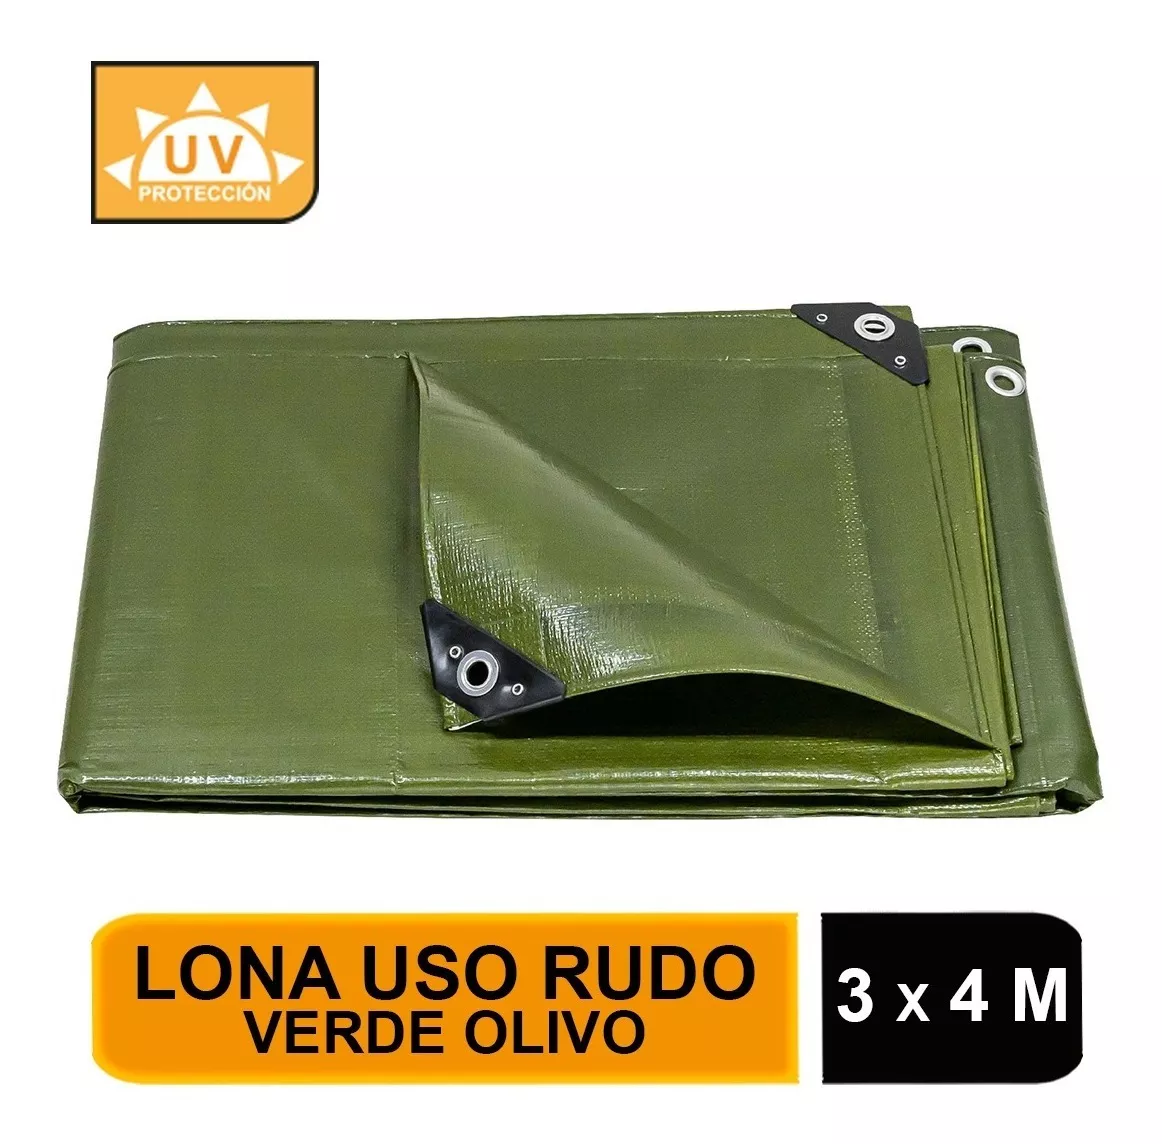 Lona Uso Rudo, Verde Olivo, 3 X 4 M, Truper Expert 16374